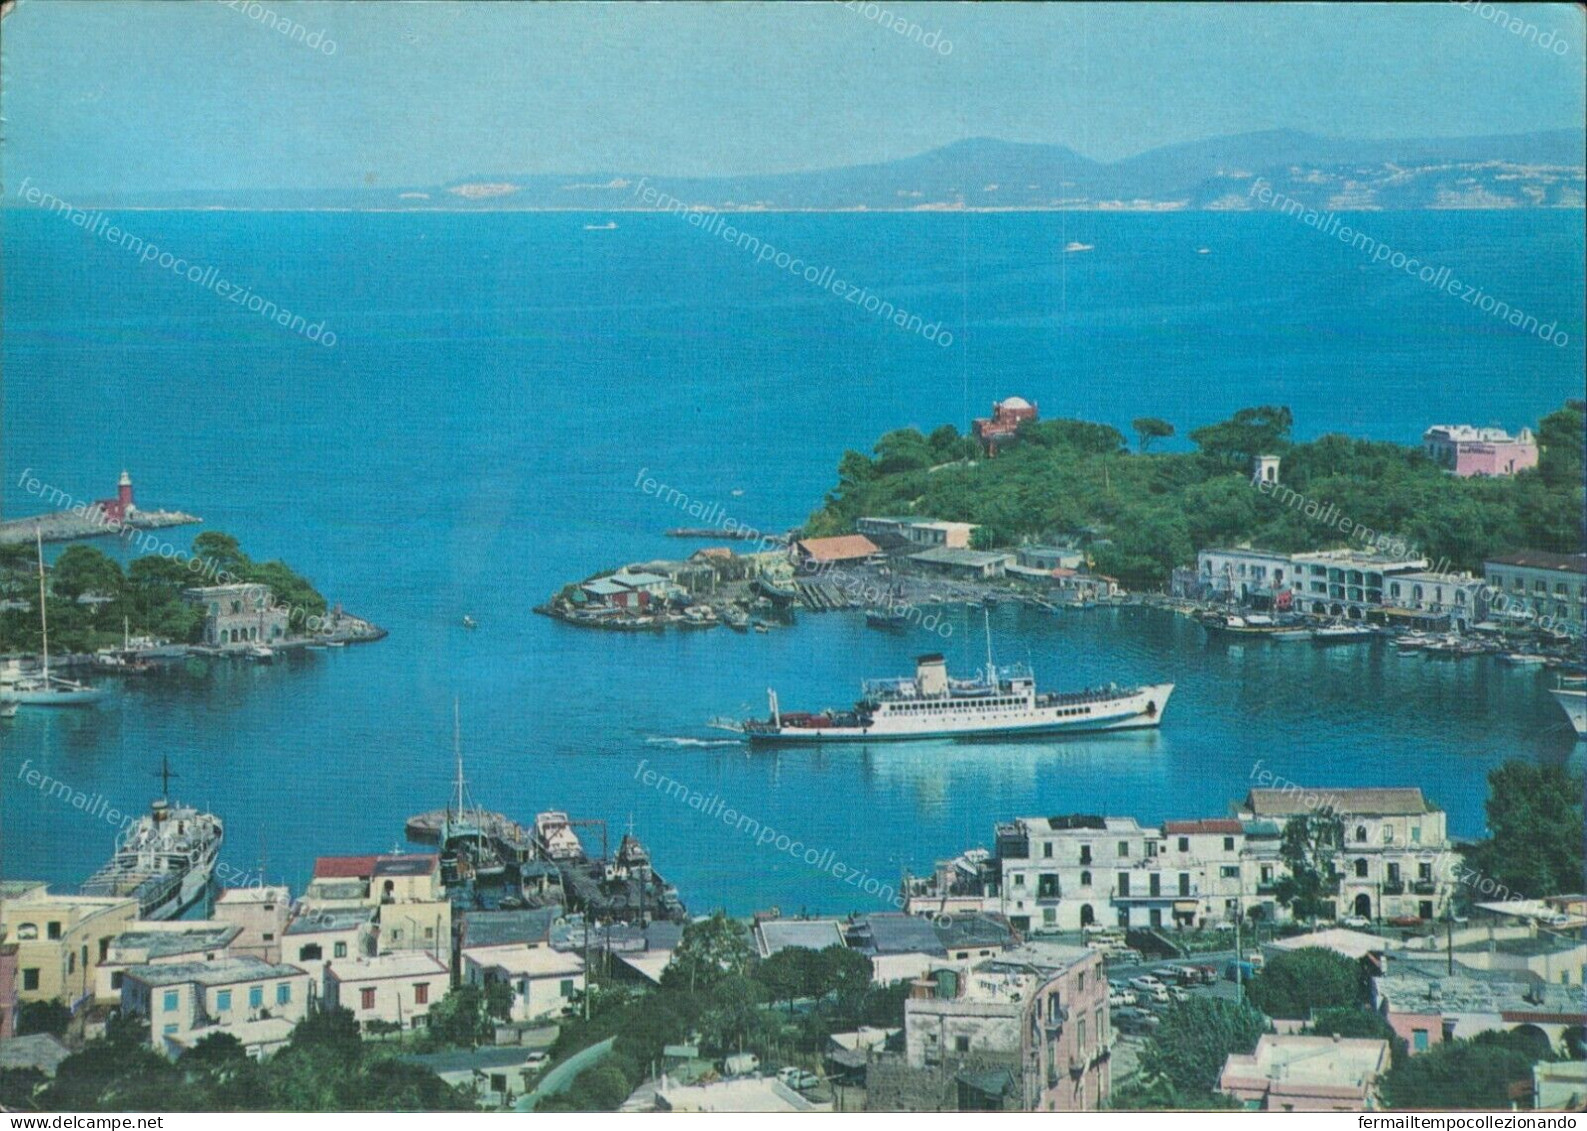 Cr437 Cartolina Porto D'ischia Provincia Di Napoli Campania - Napoli (Naples)